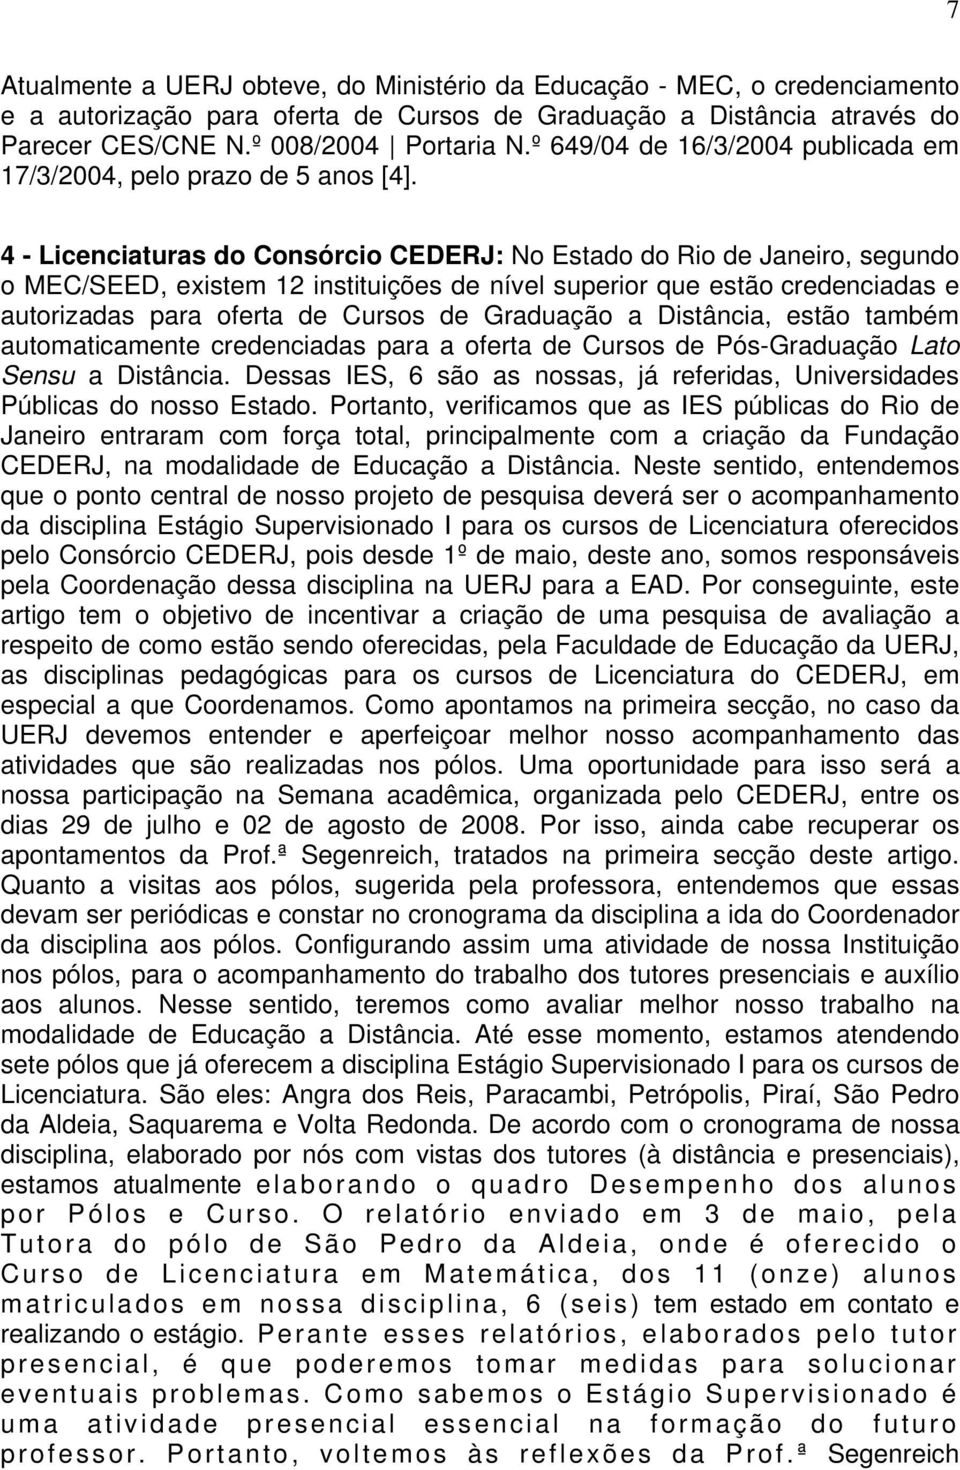 4 - Licenciaturas do Consórcio CEDERJ: No Estado do Rio de Janeiro, segundo o MEC/SEED, existem 12 instituições de nível superior que estão credenciadas e autorizadas para oferta de Cursos de